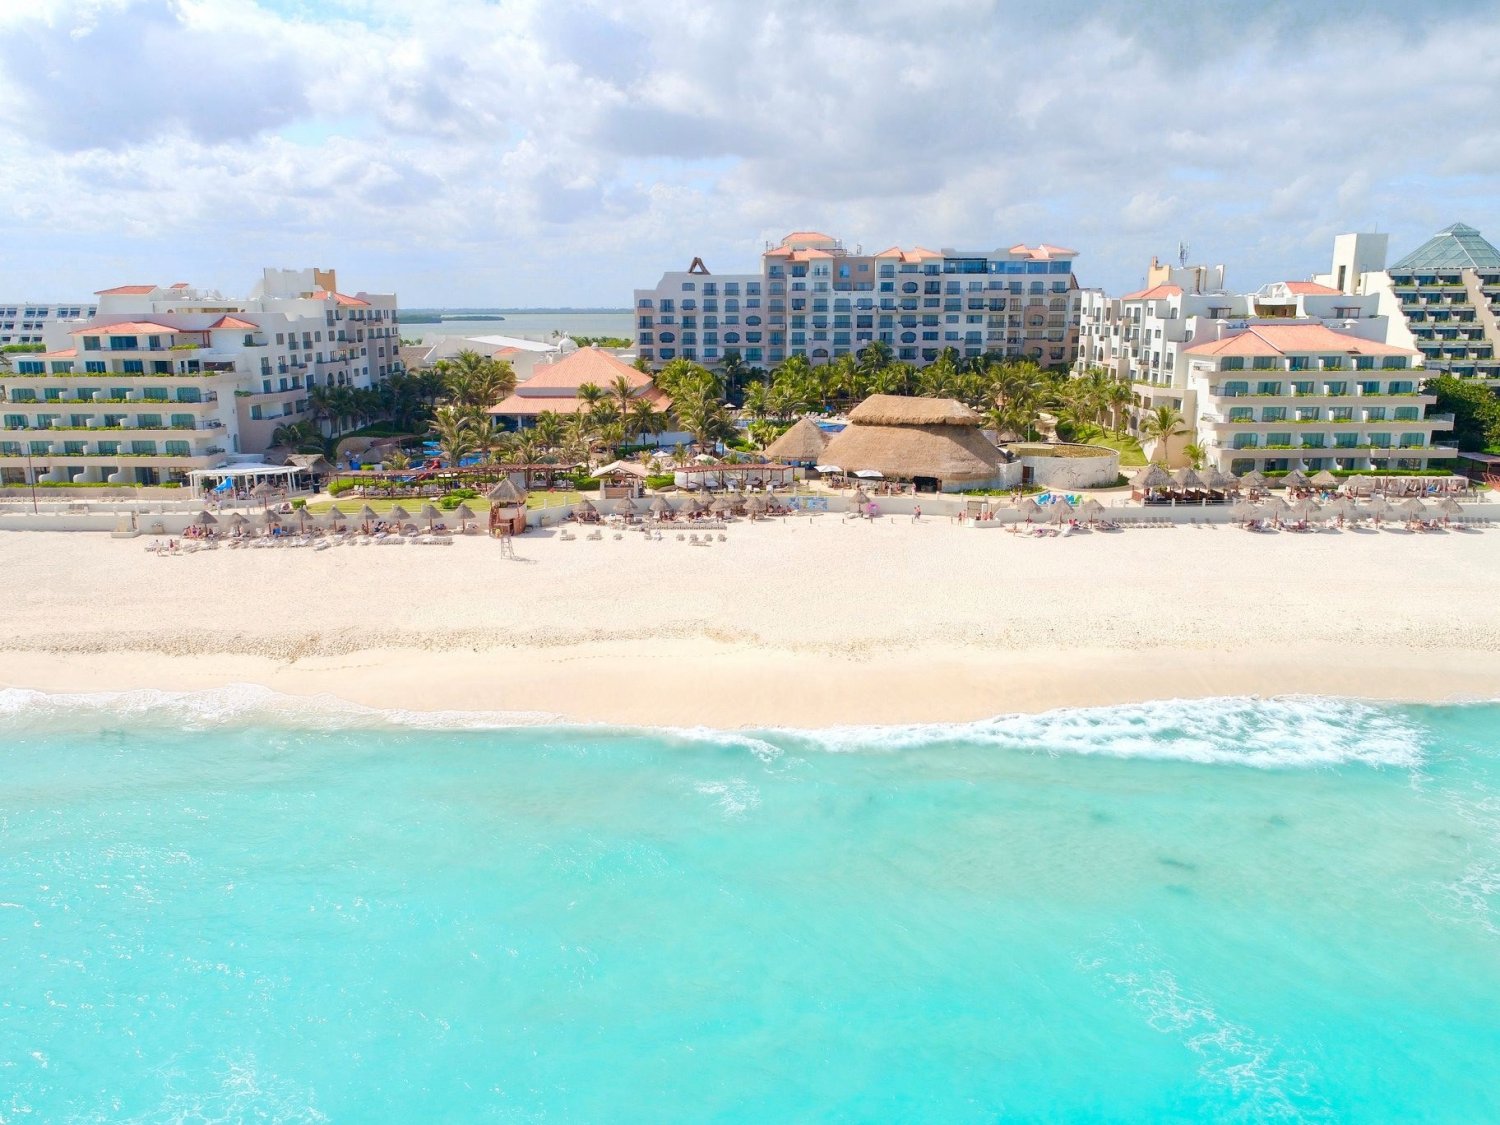 Luxury Hotels in Cancun